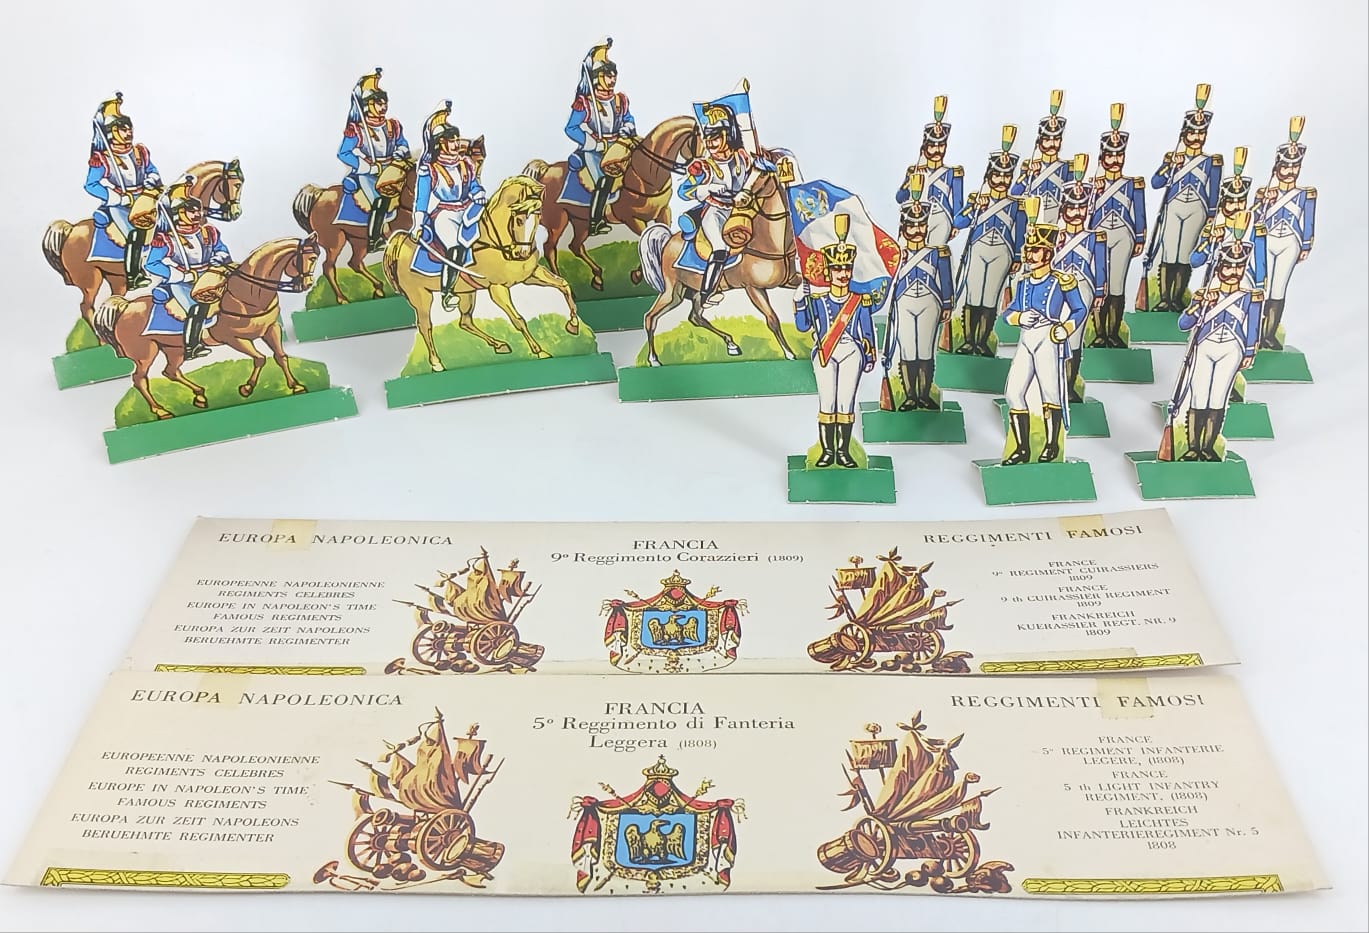 5 reggimento di fanteria leggera Francia 1808